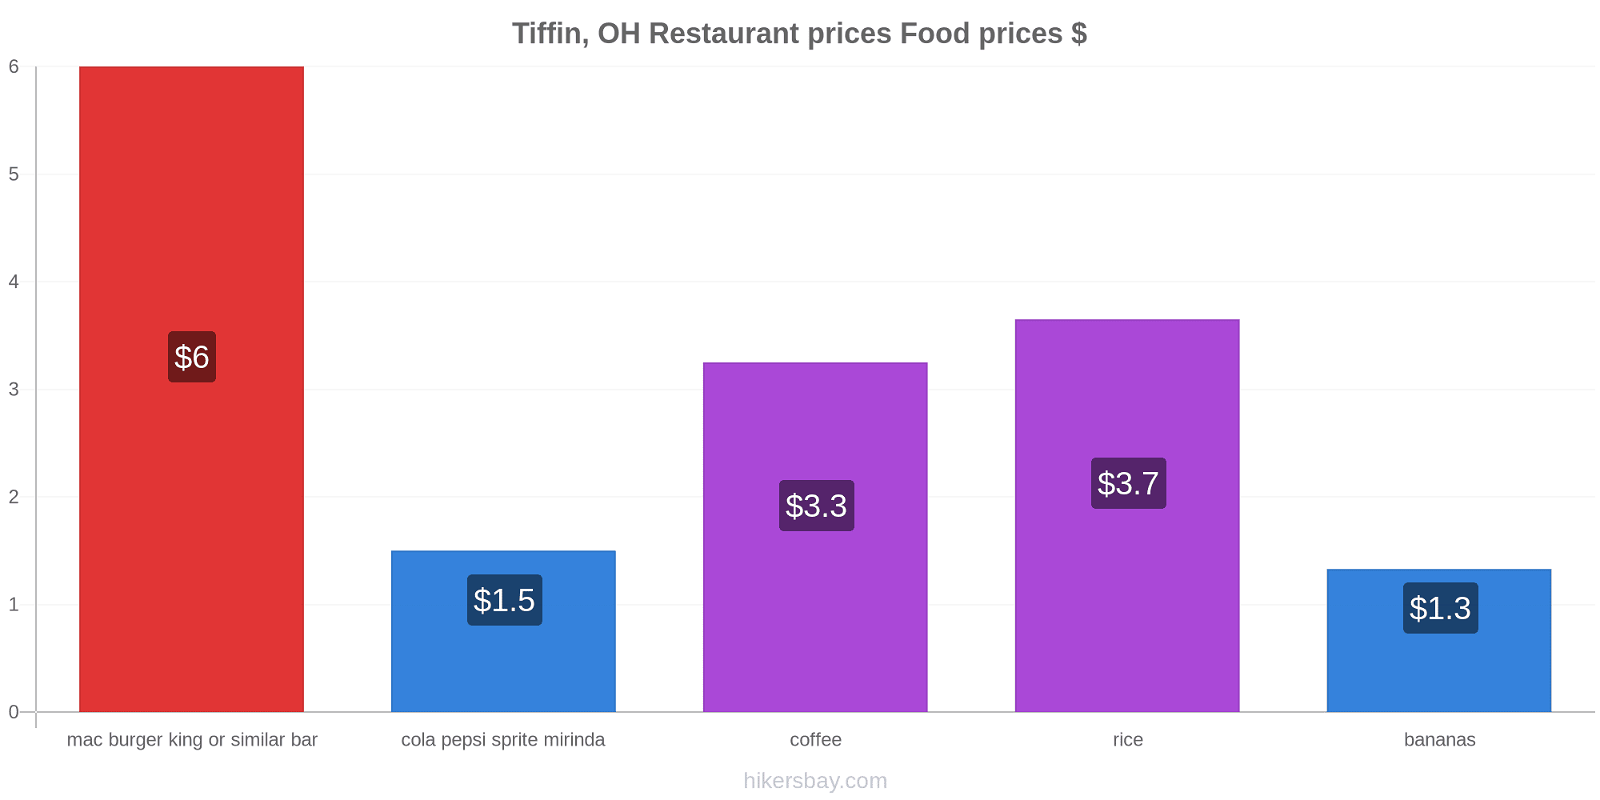 Tiffin, OH price changes hikersbay.com